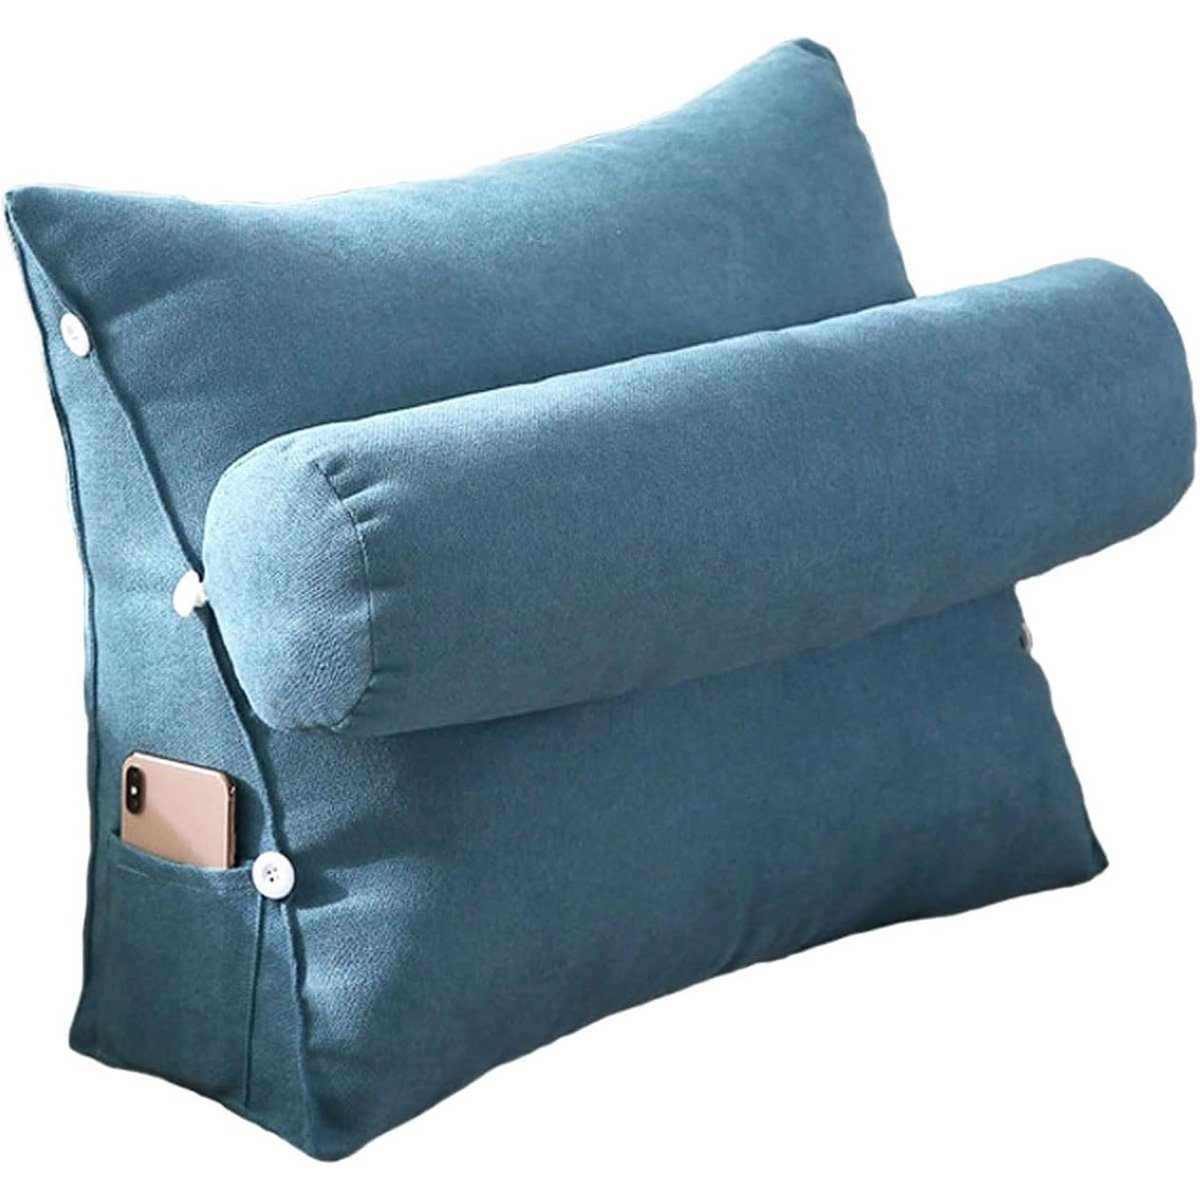 götäzer Rückenkissen Dreieckiges Kissen als Nachttischkissen, Mit Seitentaschen, Bett-Nackenkissen und Rückenlehne (45 cm) Blau